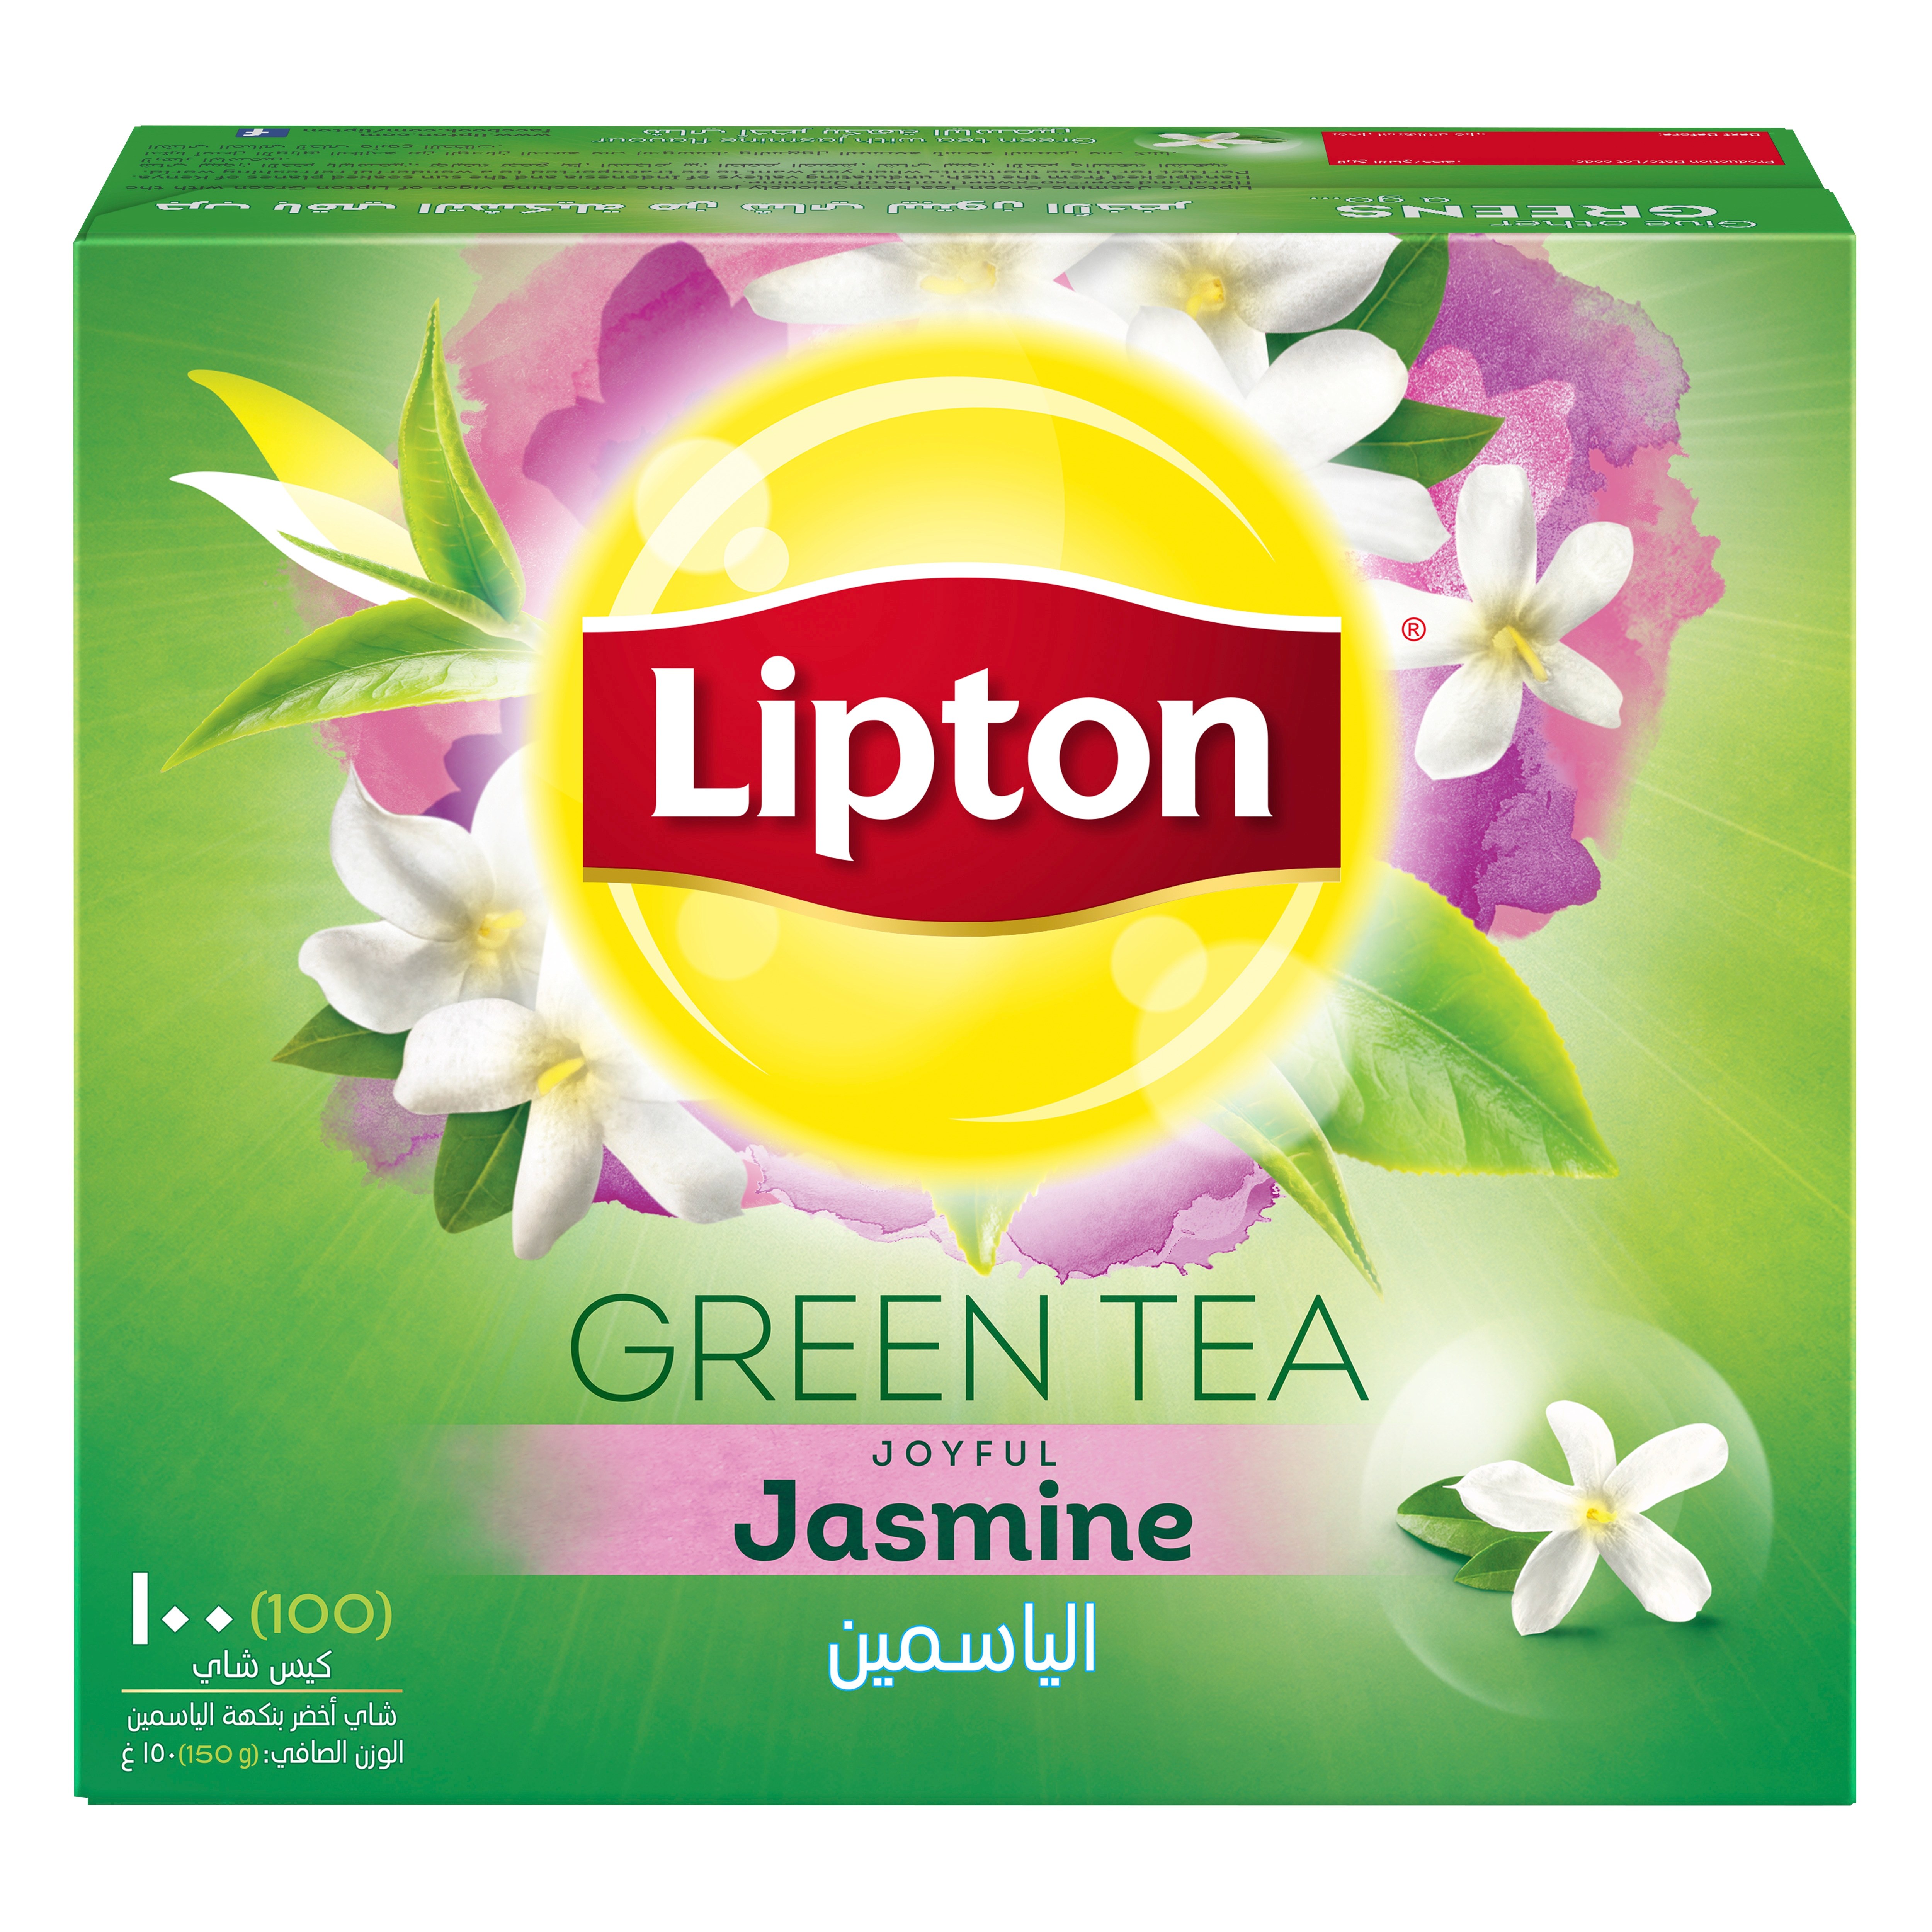 Картинки липтона. Липтон Грин ти. Жасминовый Липтон. Липтон зеленый чай. Липтон Грин ти логотип.